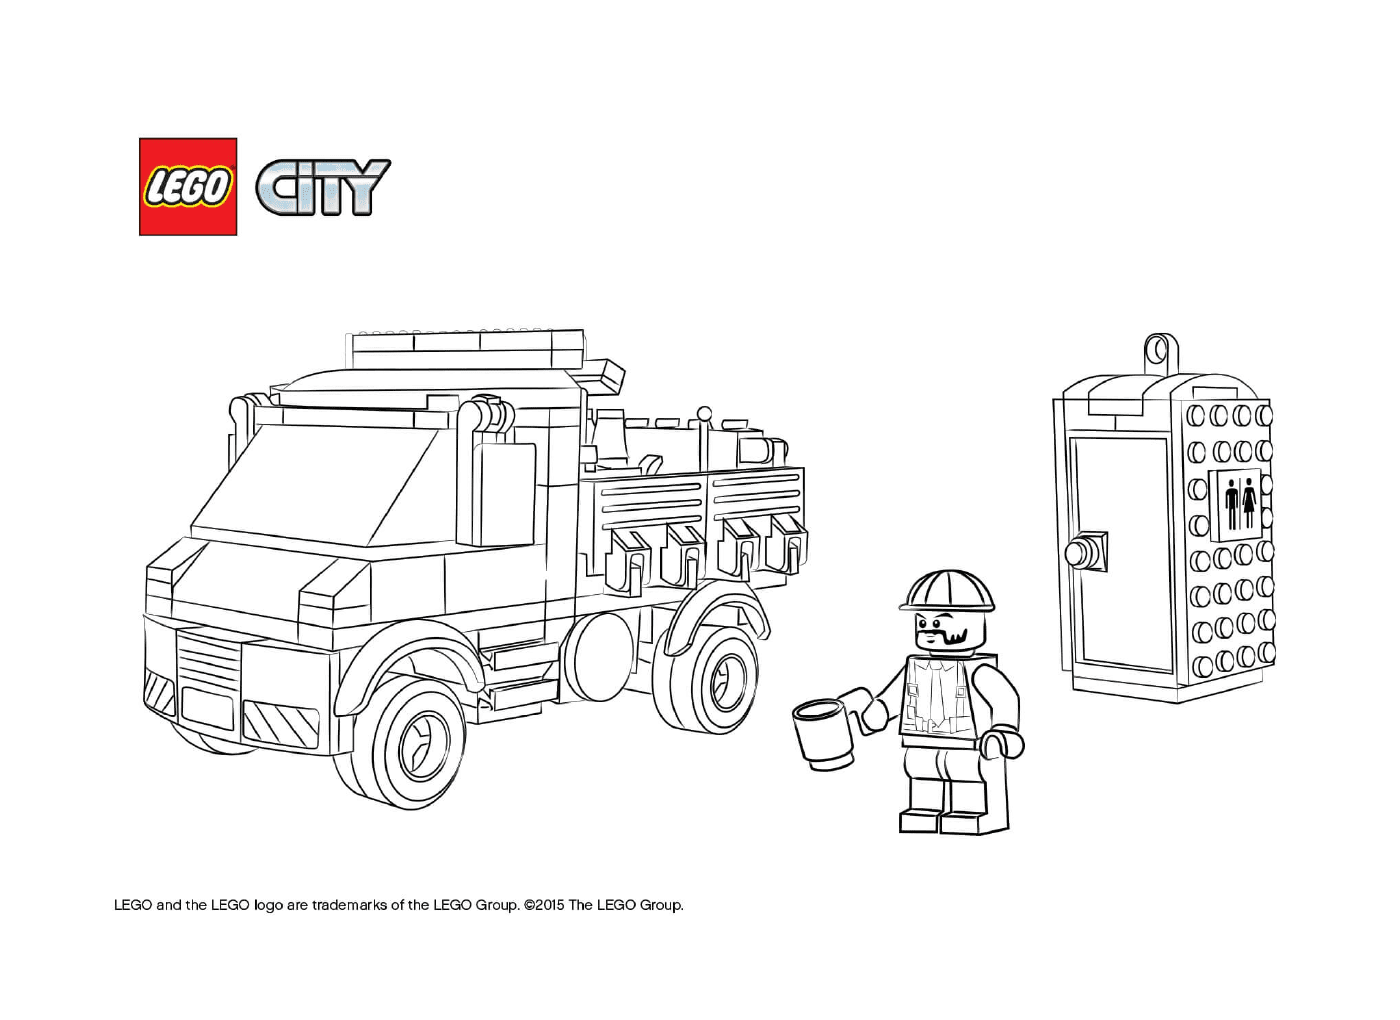  caminhão de serviço Lego City 